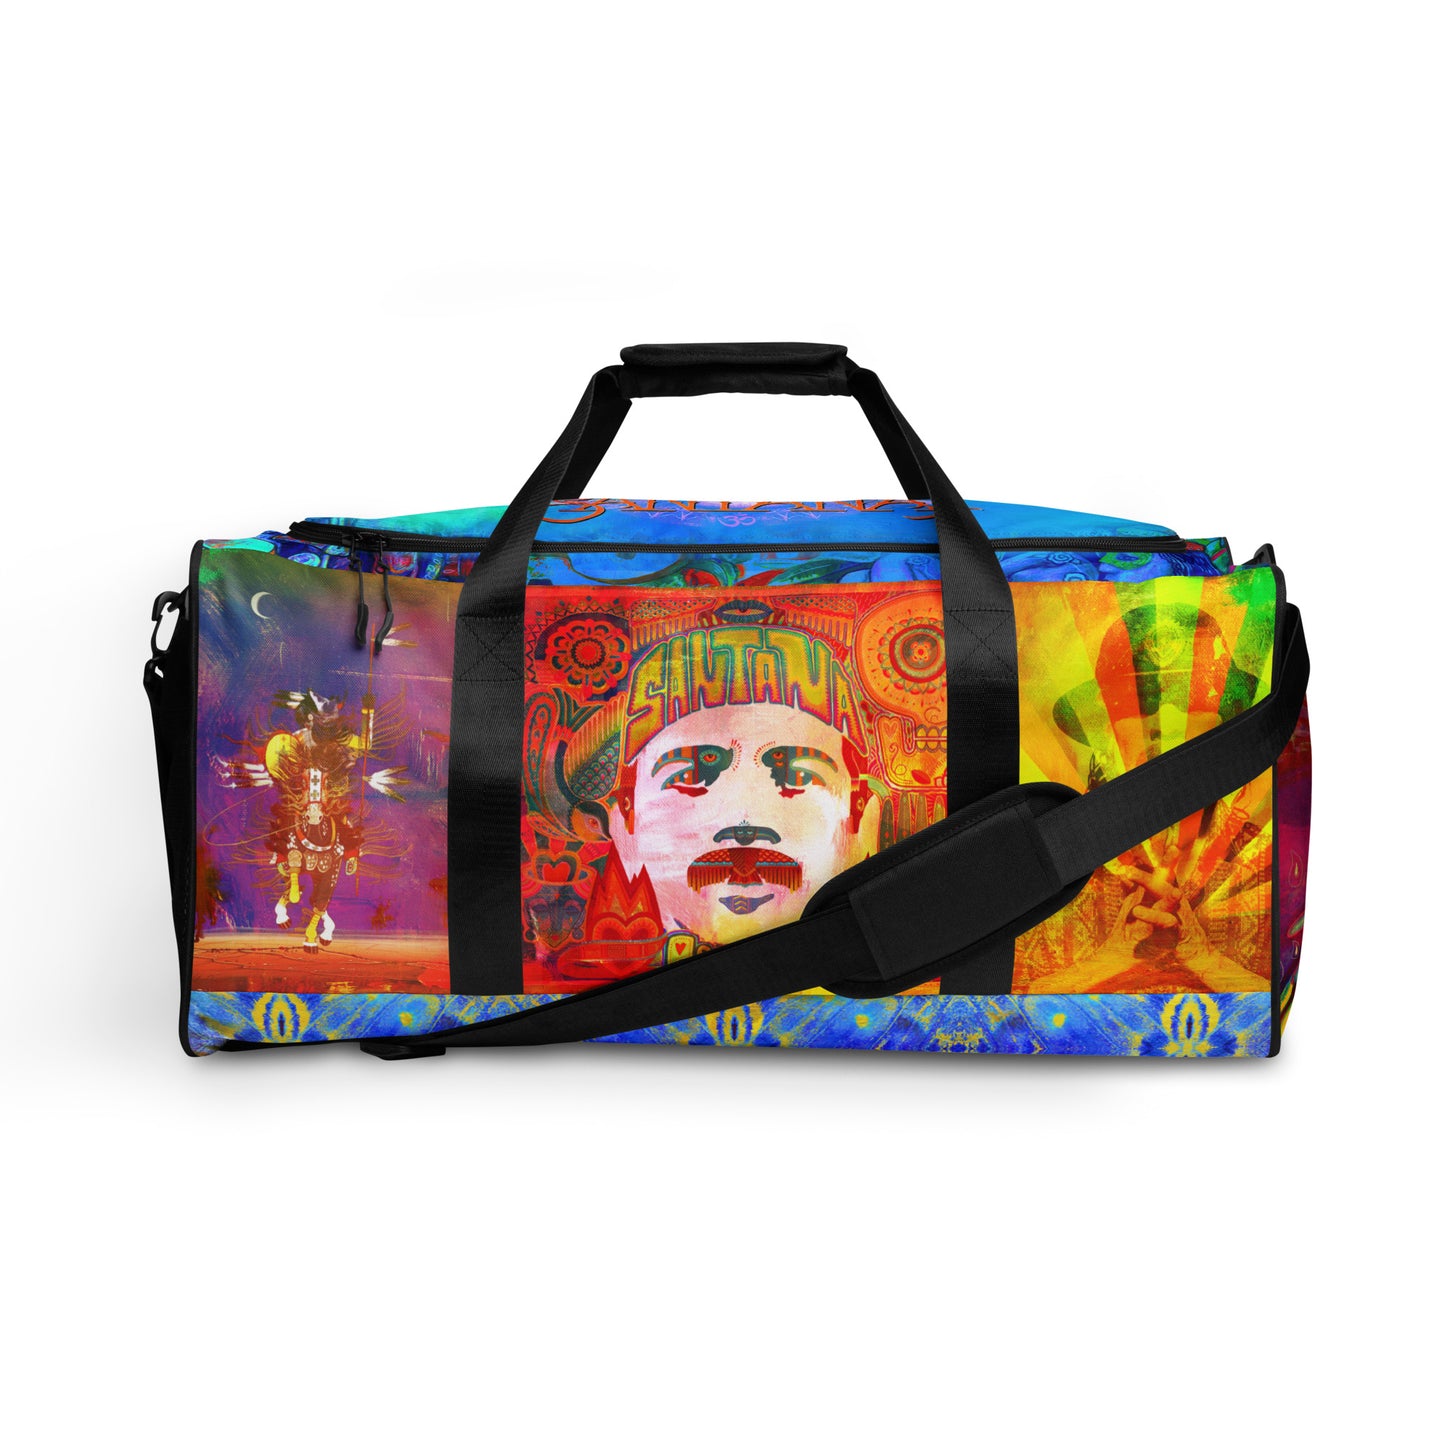 Santana "Album Mash Up" All-Over Duffle Bag (Print on Demand)